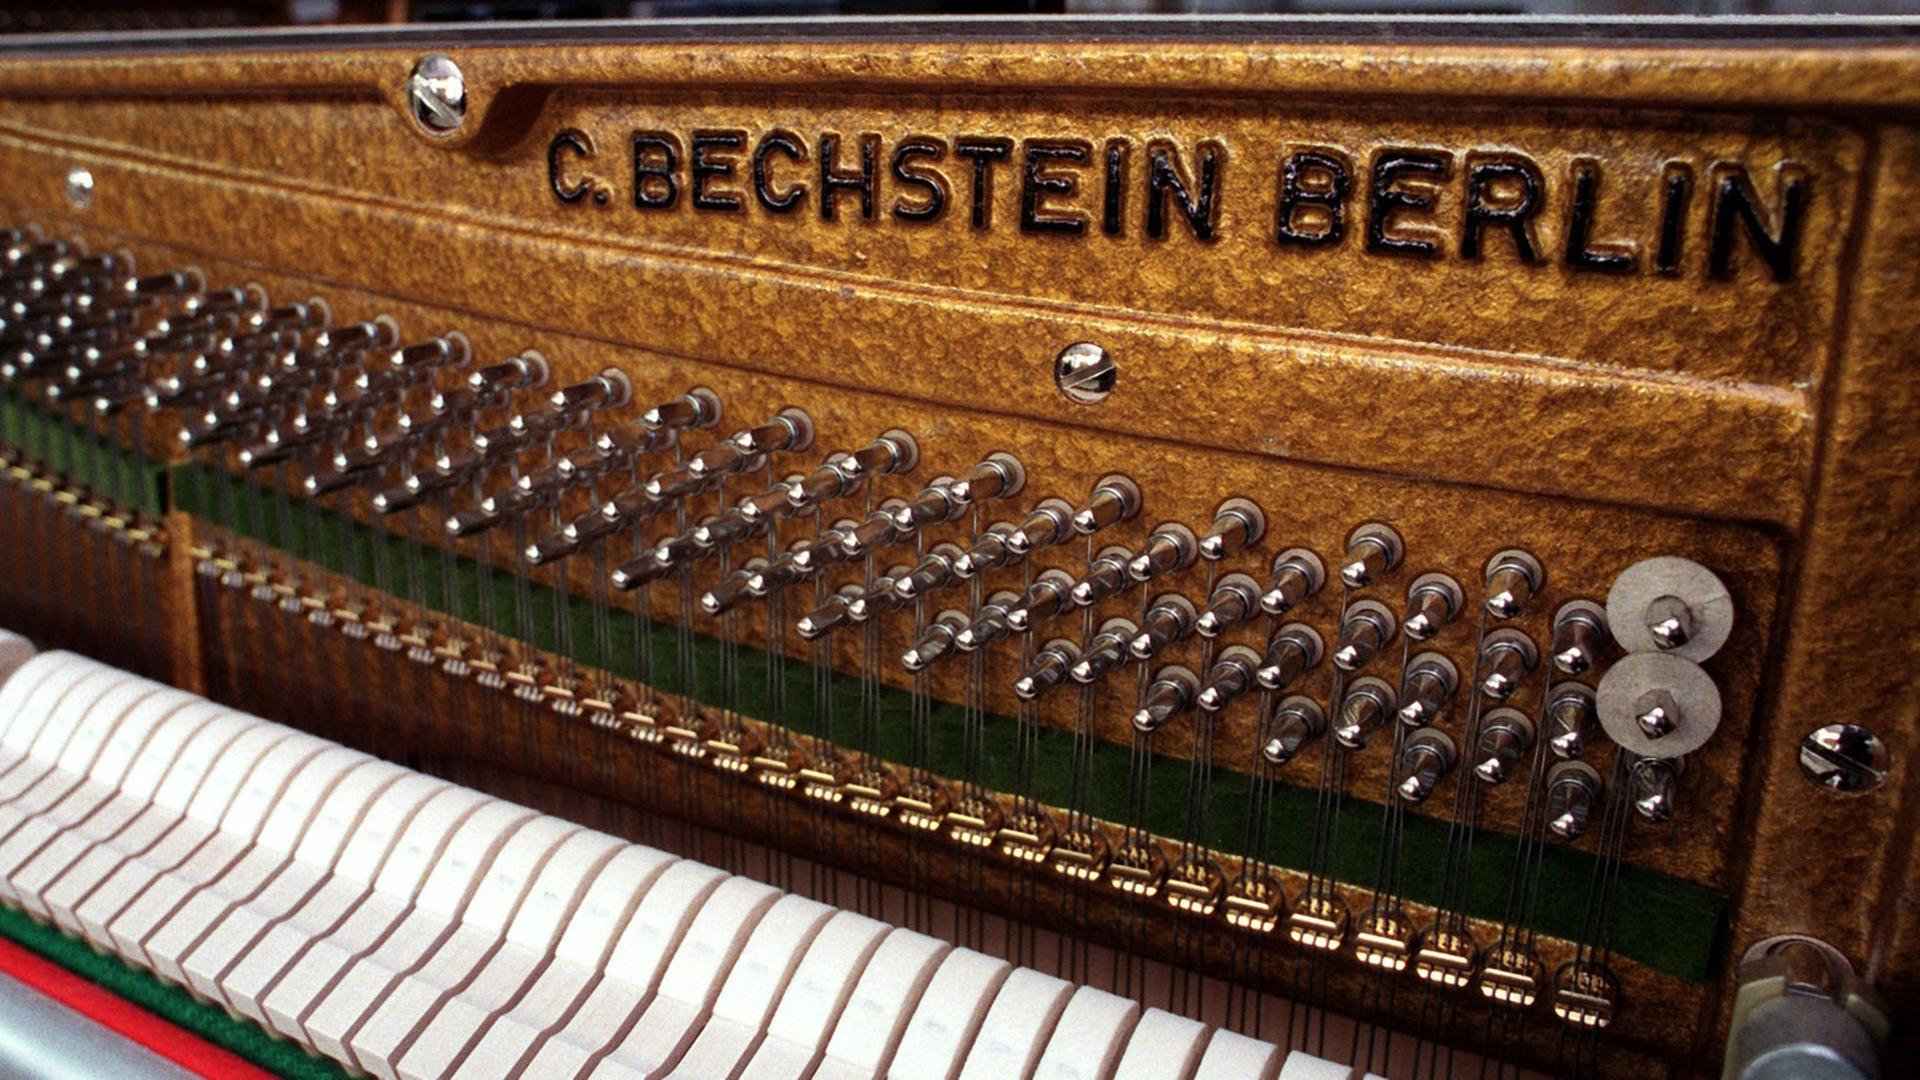 Flügel und Klaviere aus Seifhennersdorf Aufgenommen am 14. Januar 1999.